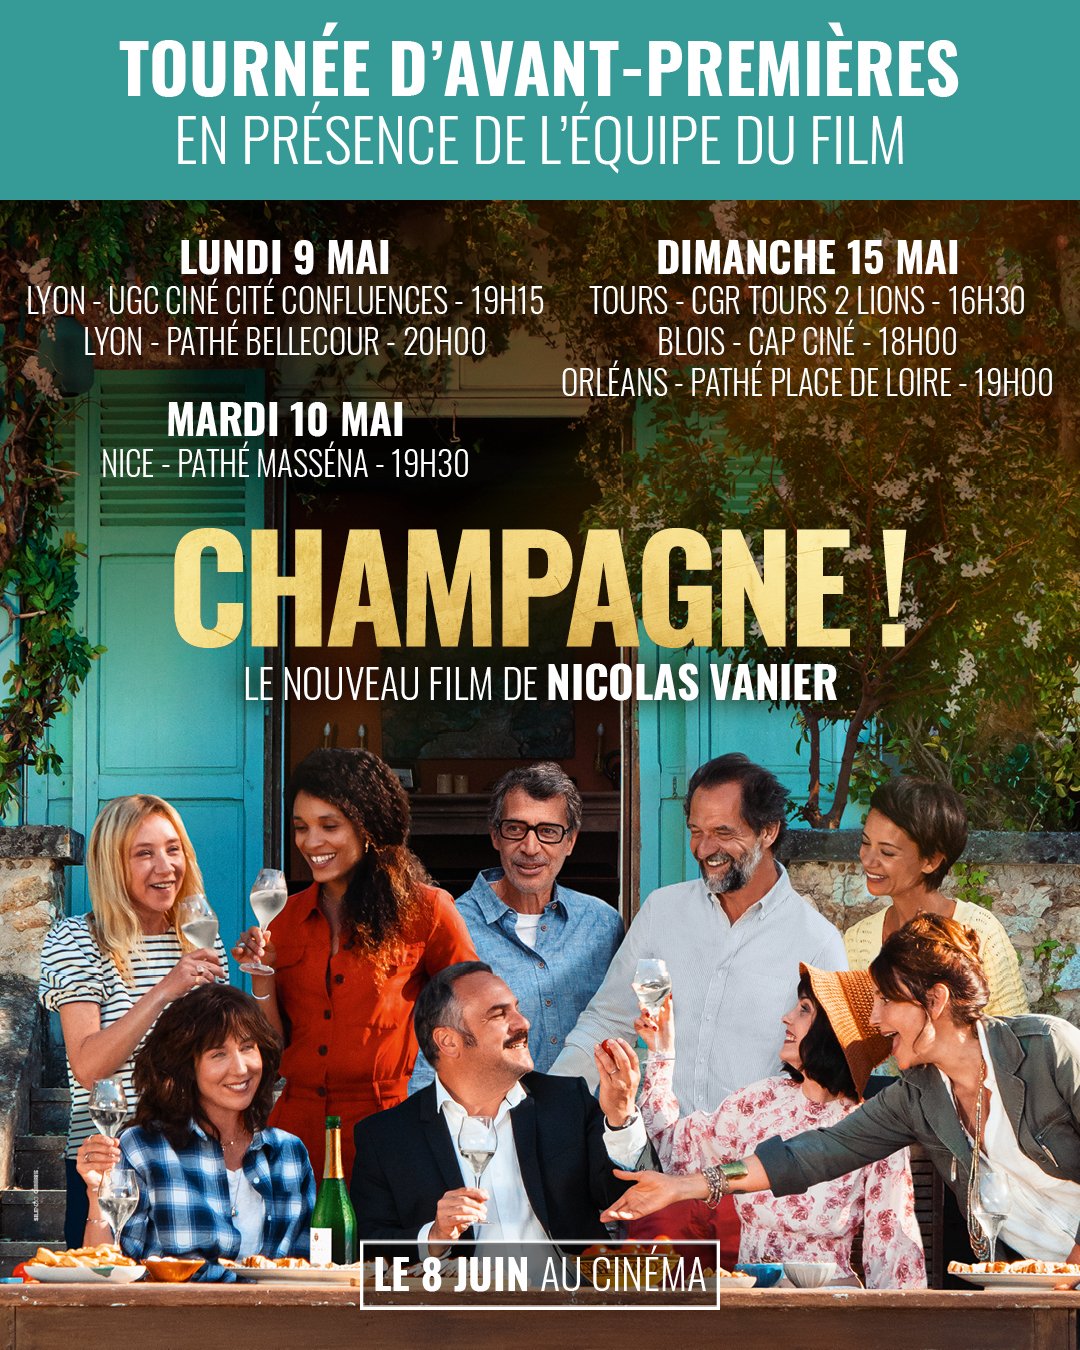 SND on X: "La tournée continue ! Découvrez #Champagne!, le nouveau film de #NicolasVanier en avant-première dans vos cinémas et en présence de l'équipe du film ! Réservez vite vos places :